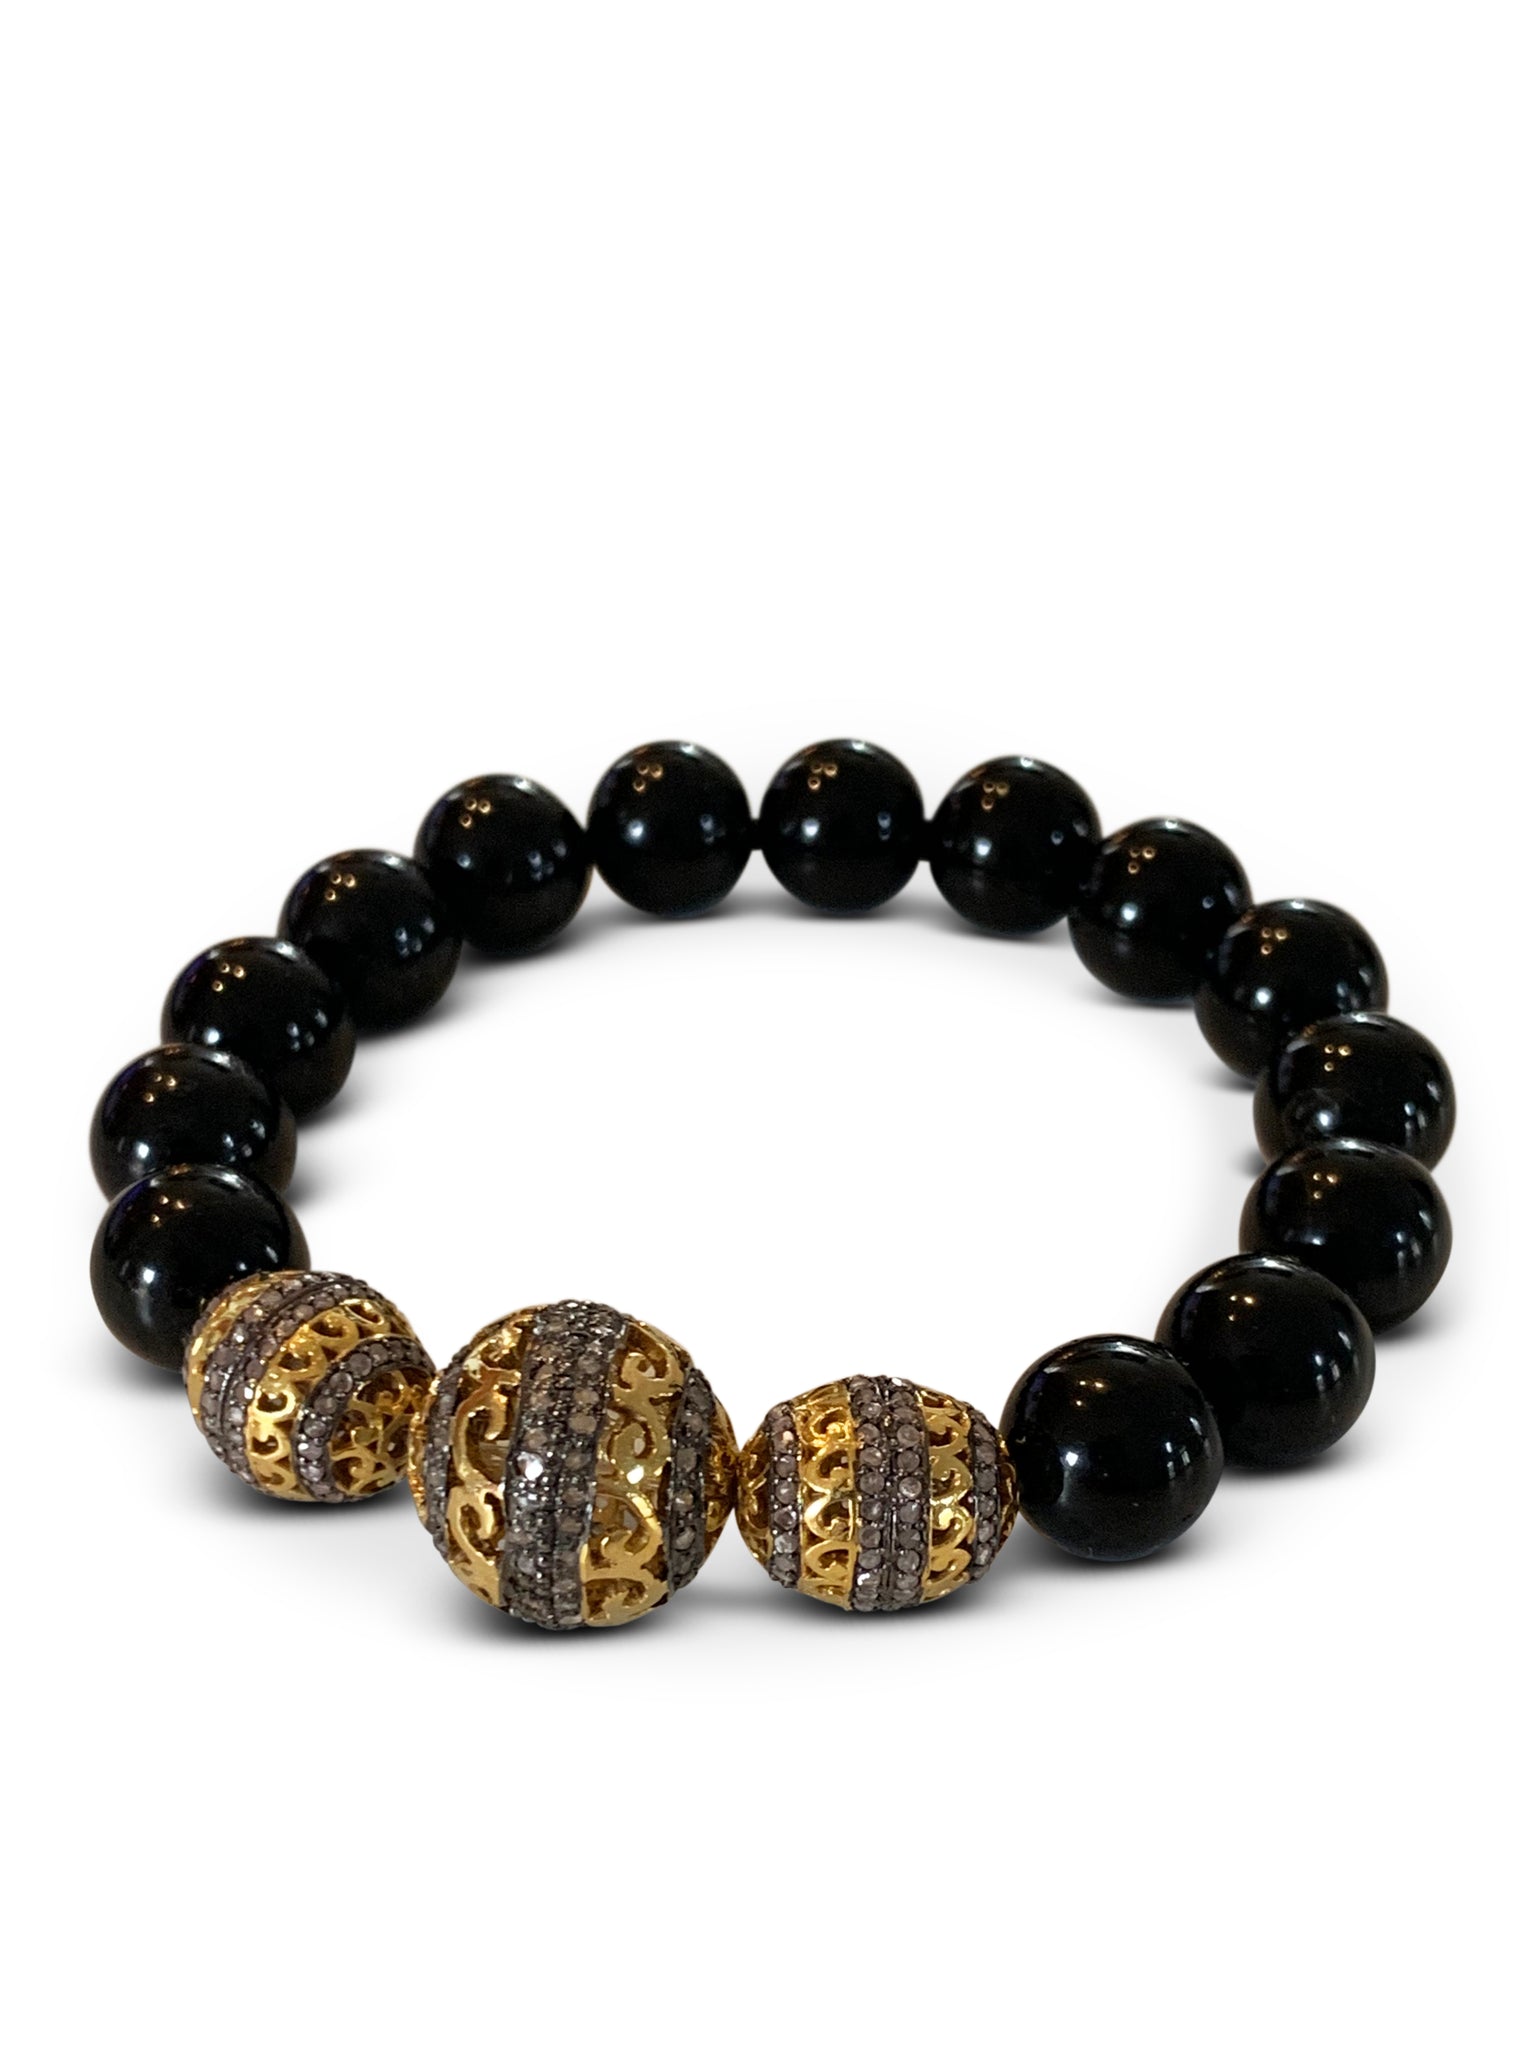 Black Tourmaline with Three Pave Diamond Beads